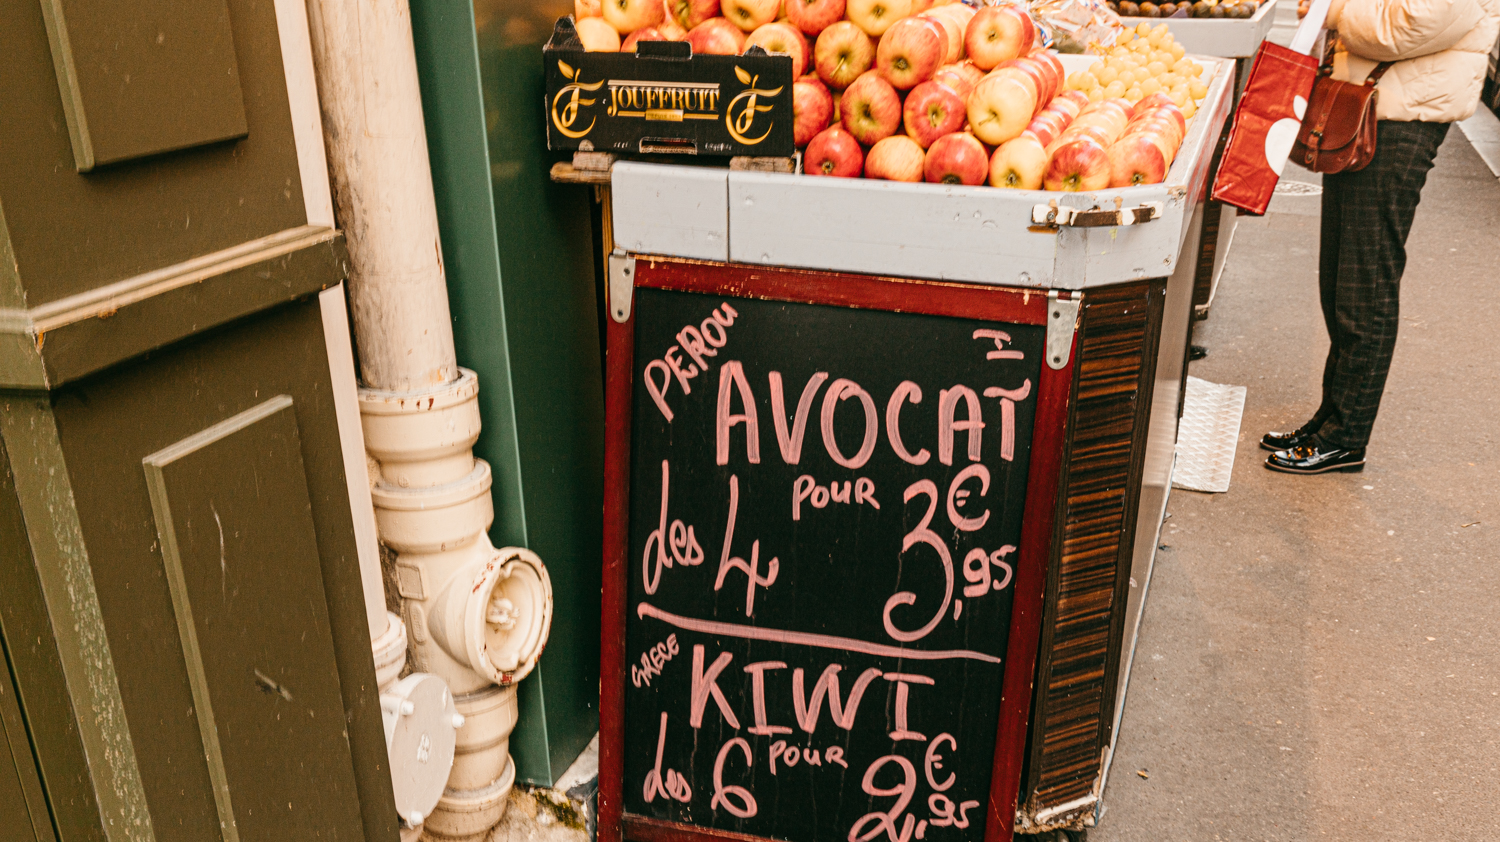 Manger à Paris coute plus cher qu’en province. Cependant, les salaires sont plus élevés. © Globe Reporters